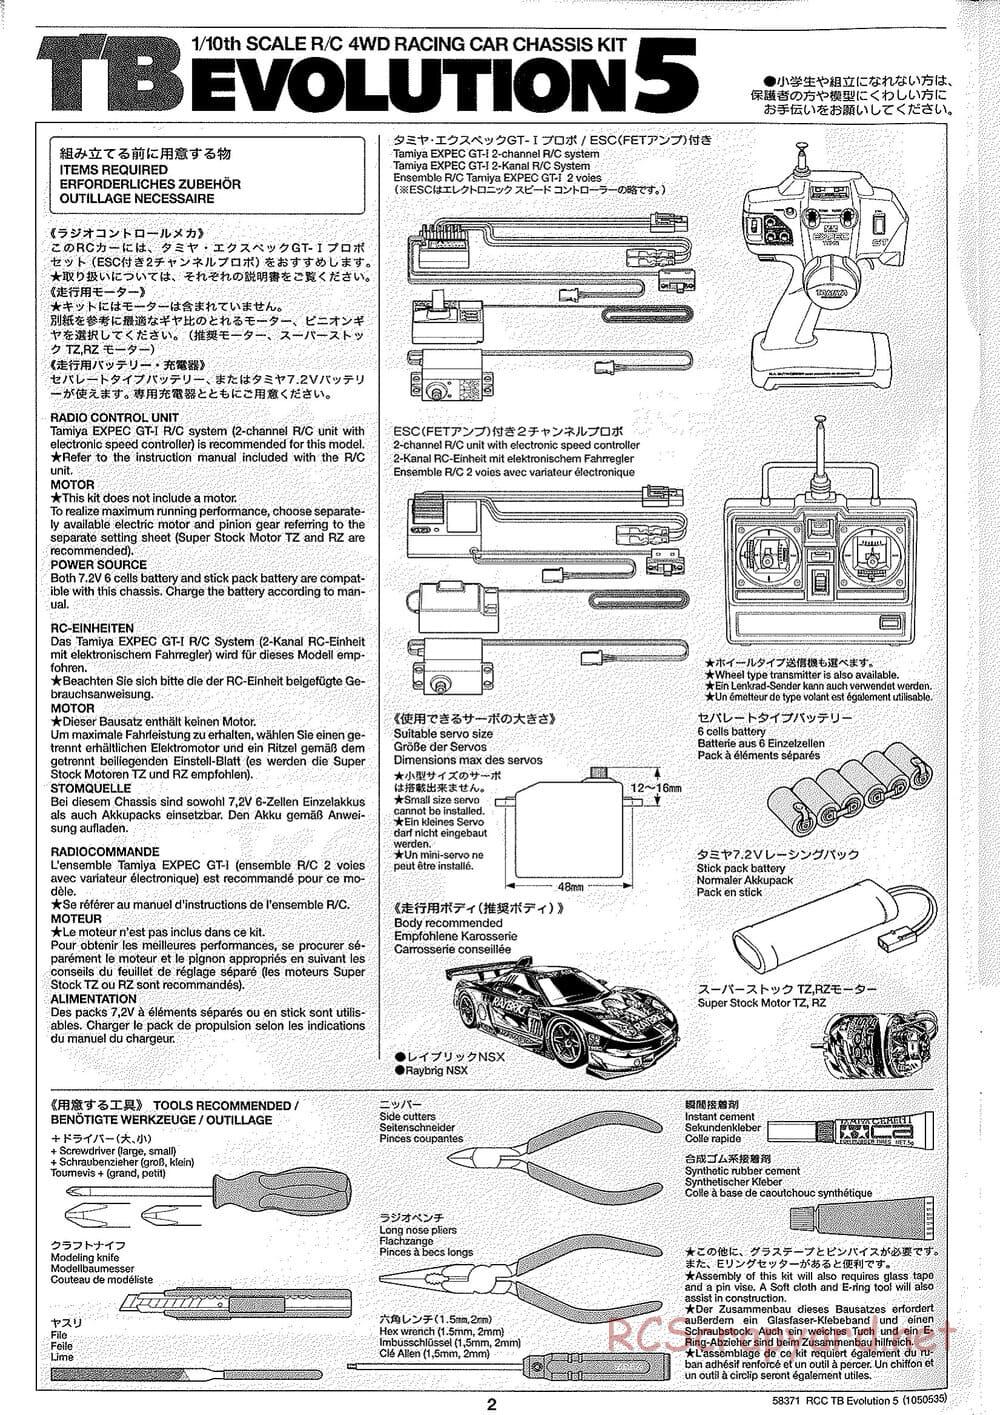 Tamiya - TB Evolution V Chassis - Manual - Page 2